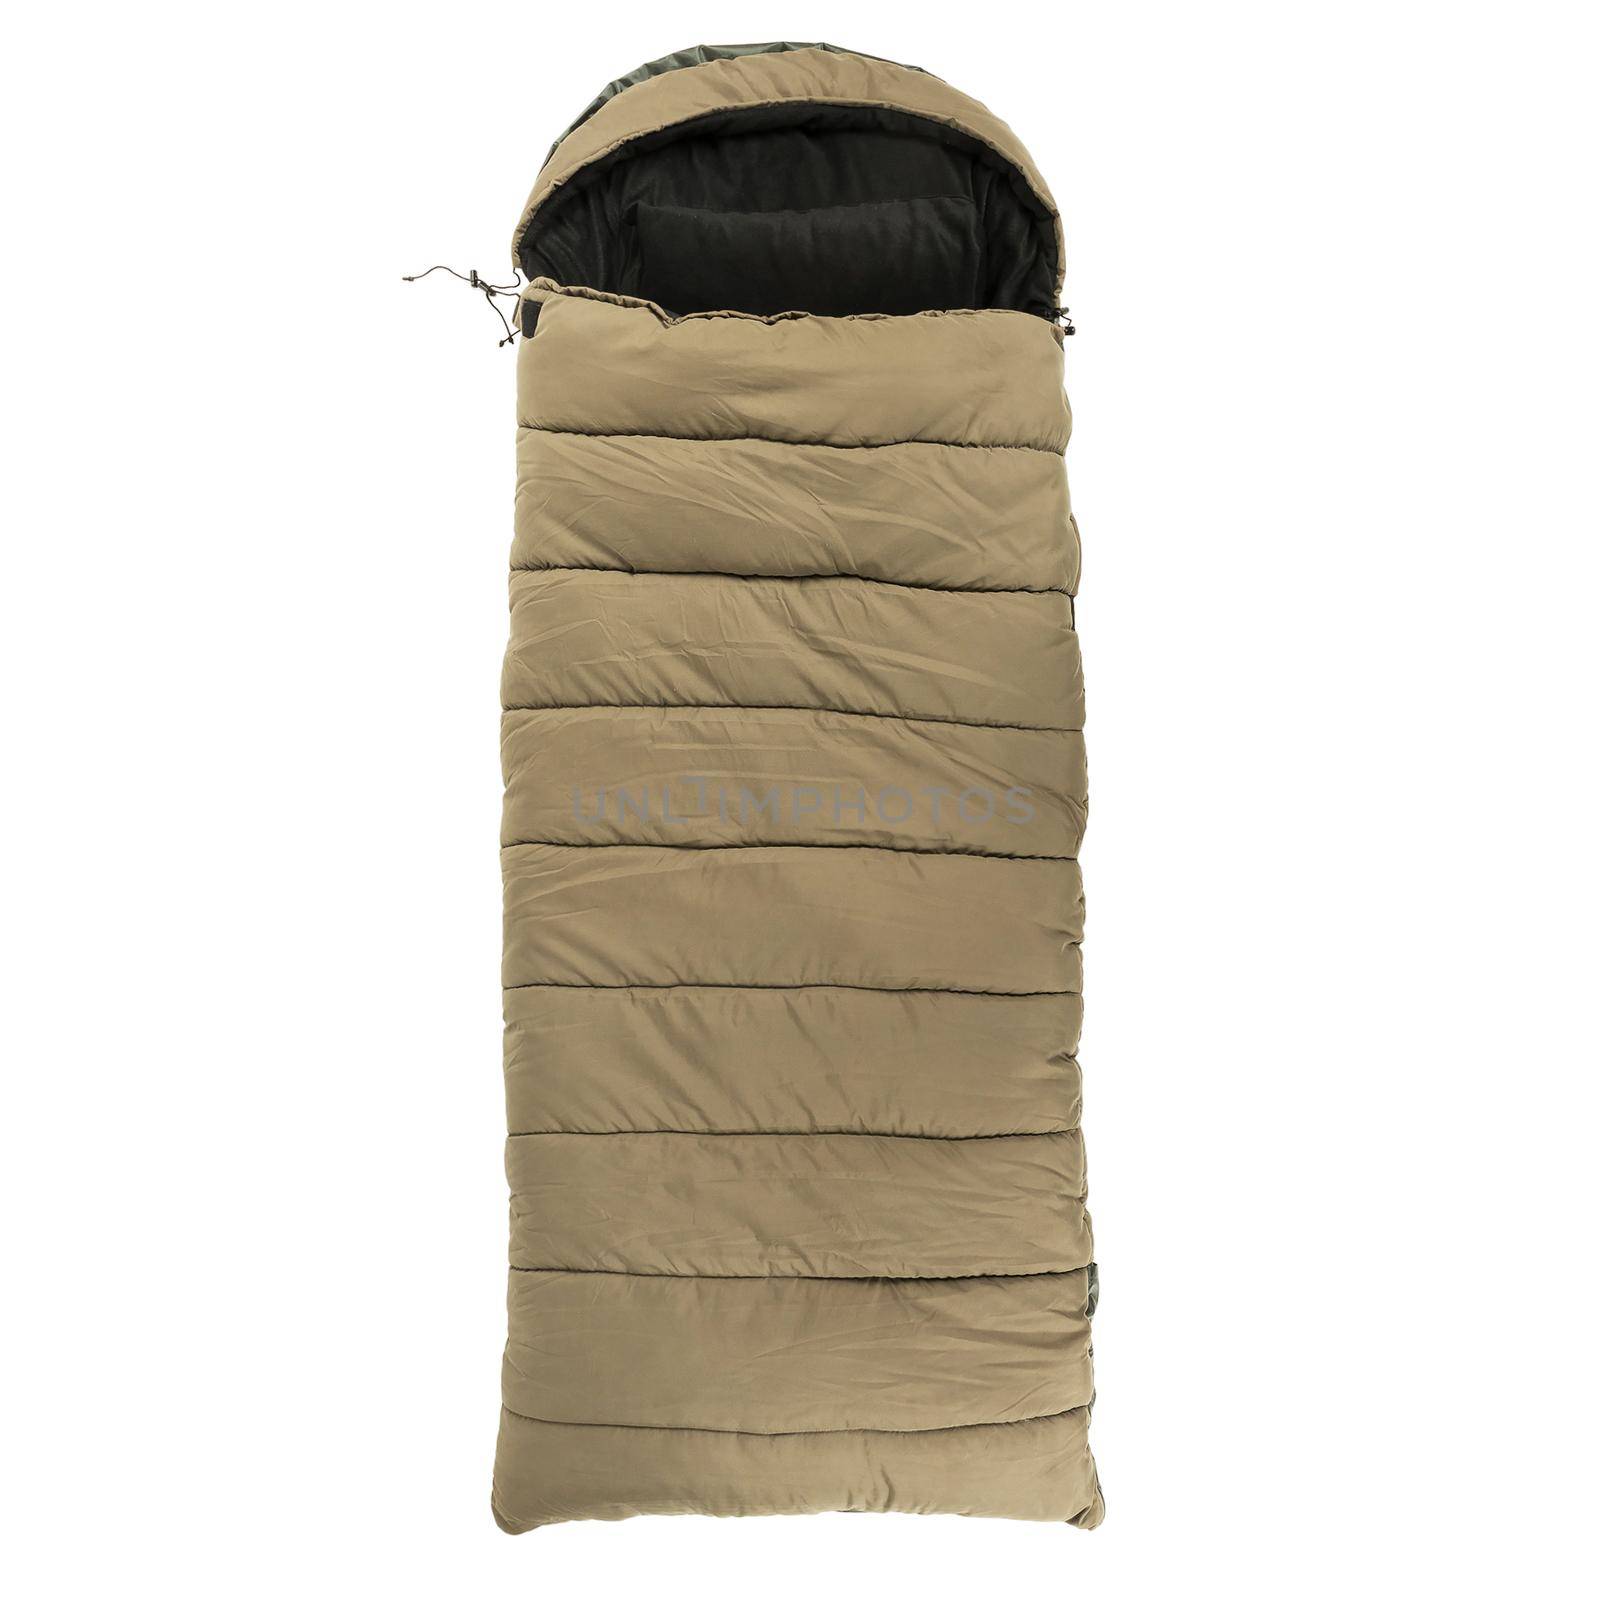 Warm sleeping bag isolated on white baground